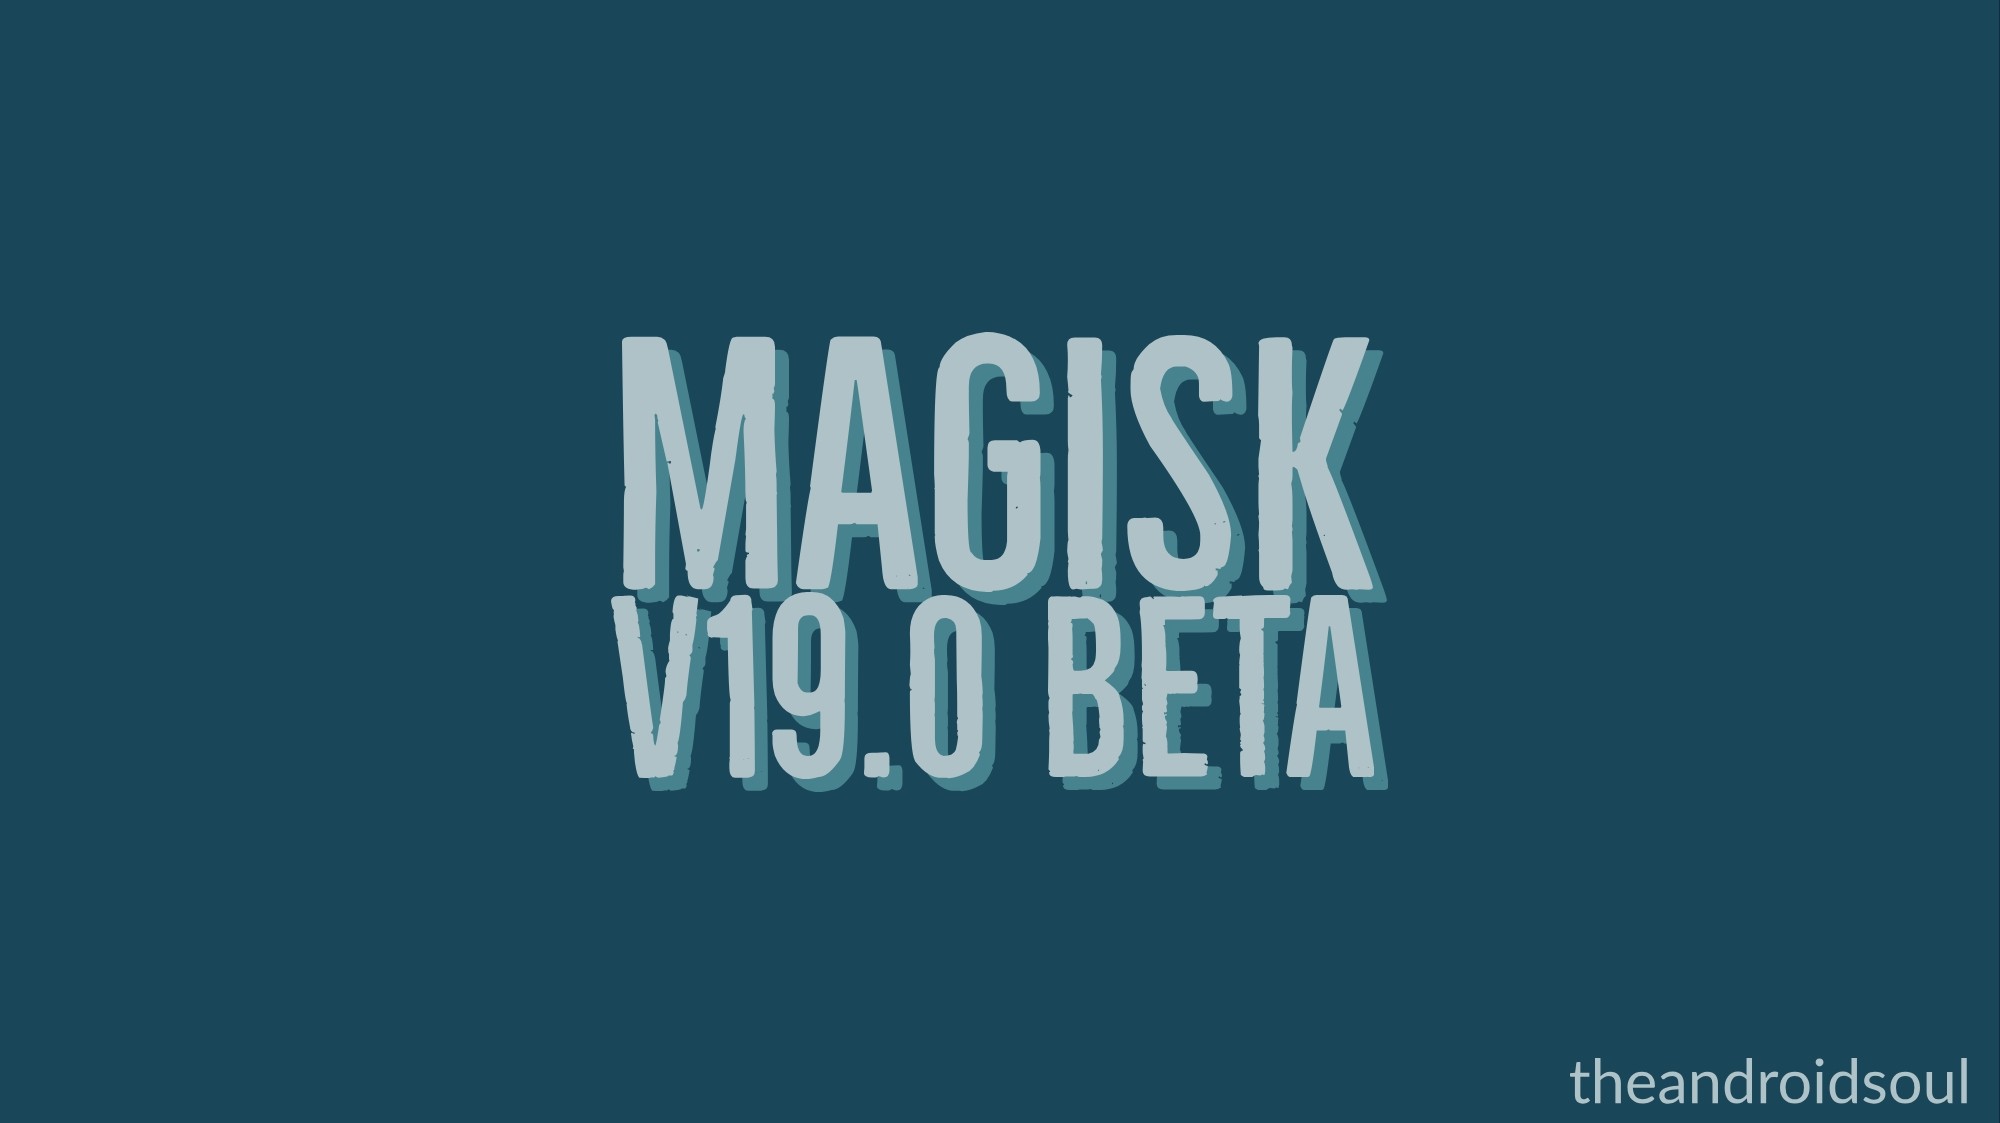 Magisk 19 beta lanzado con soporte para Android Q root